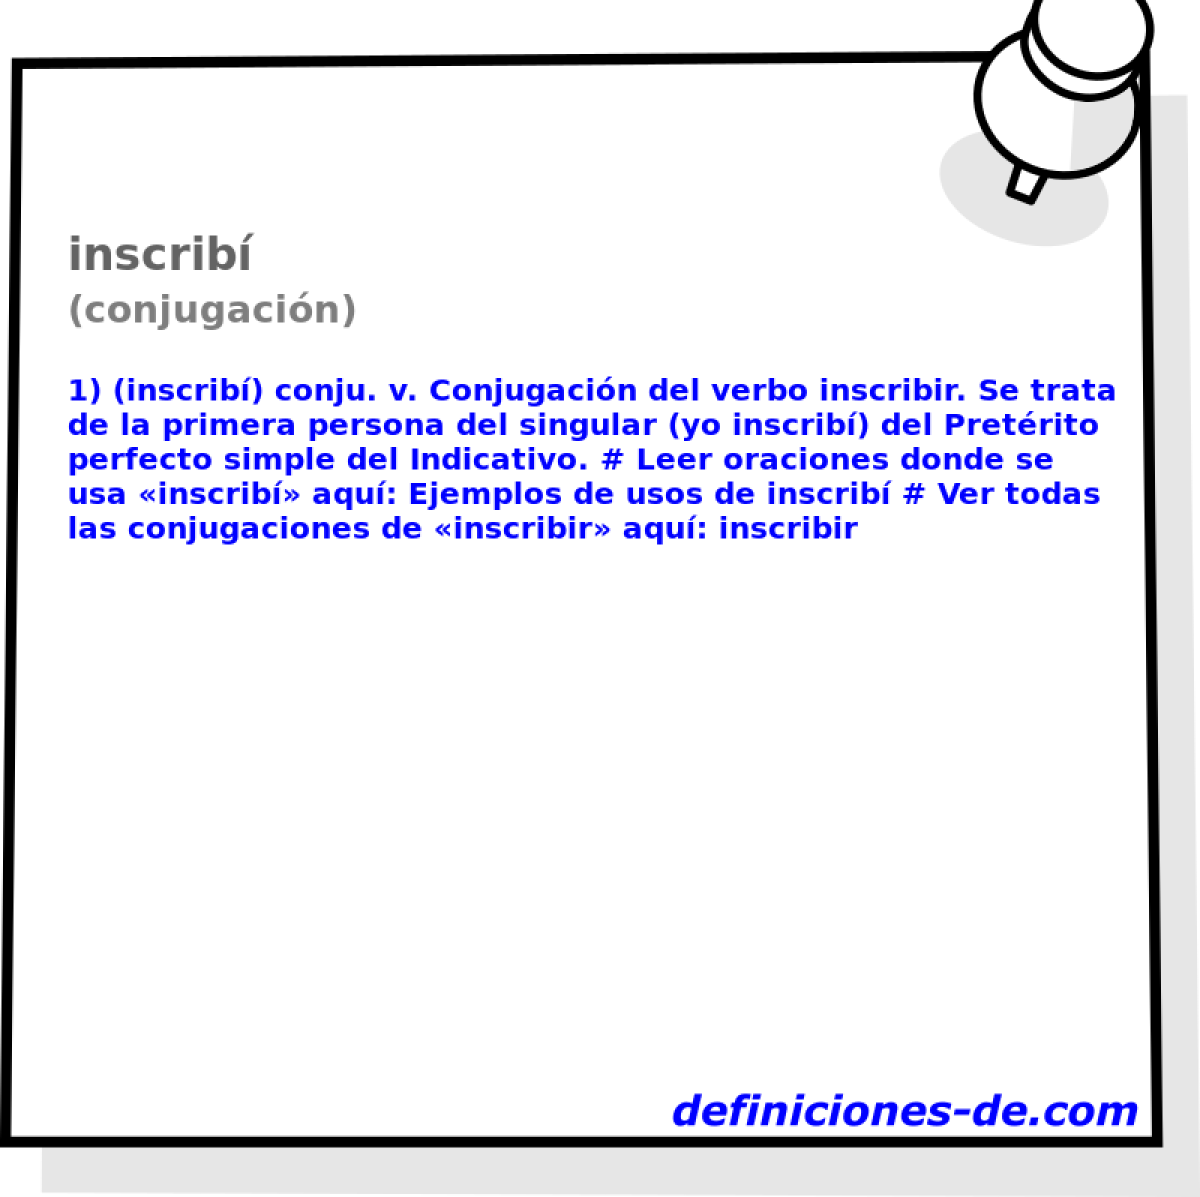 inscrib (conjugacin)